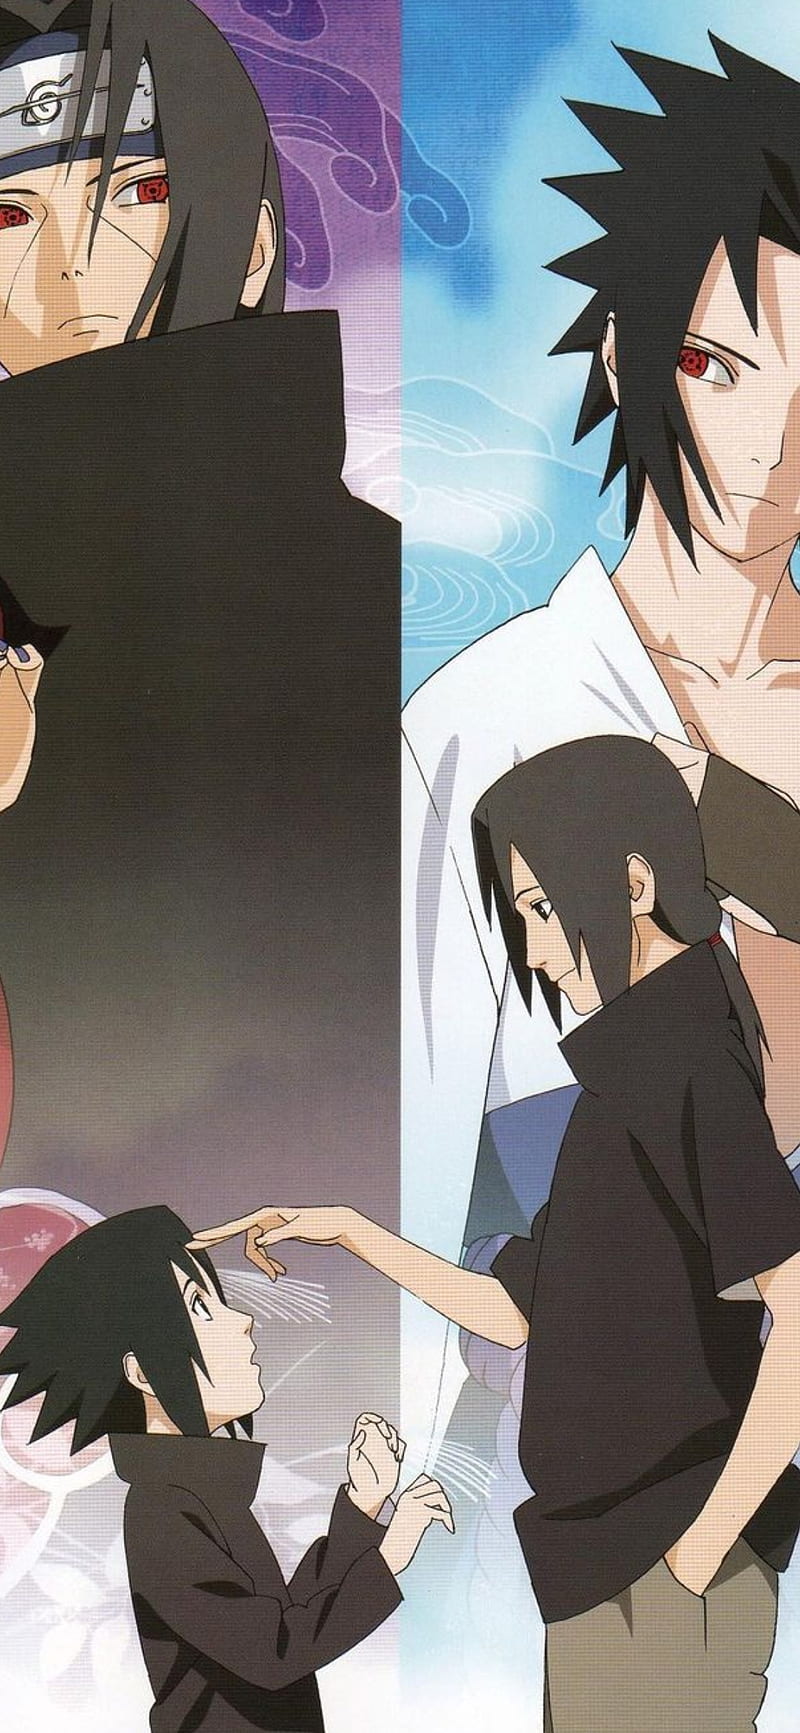 Naruto: Sasuke's Story and Code Arc adaptations confirmed for Boruto anime